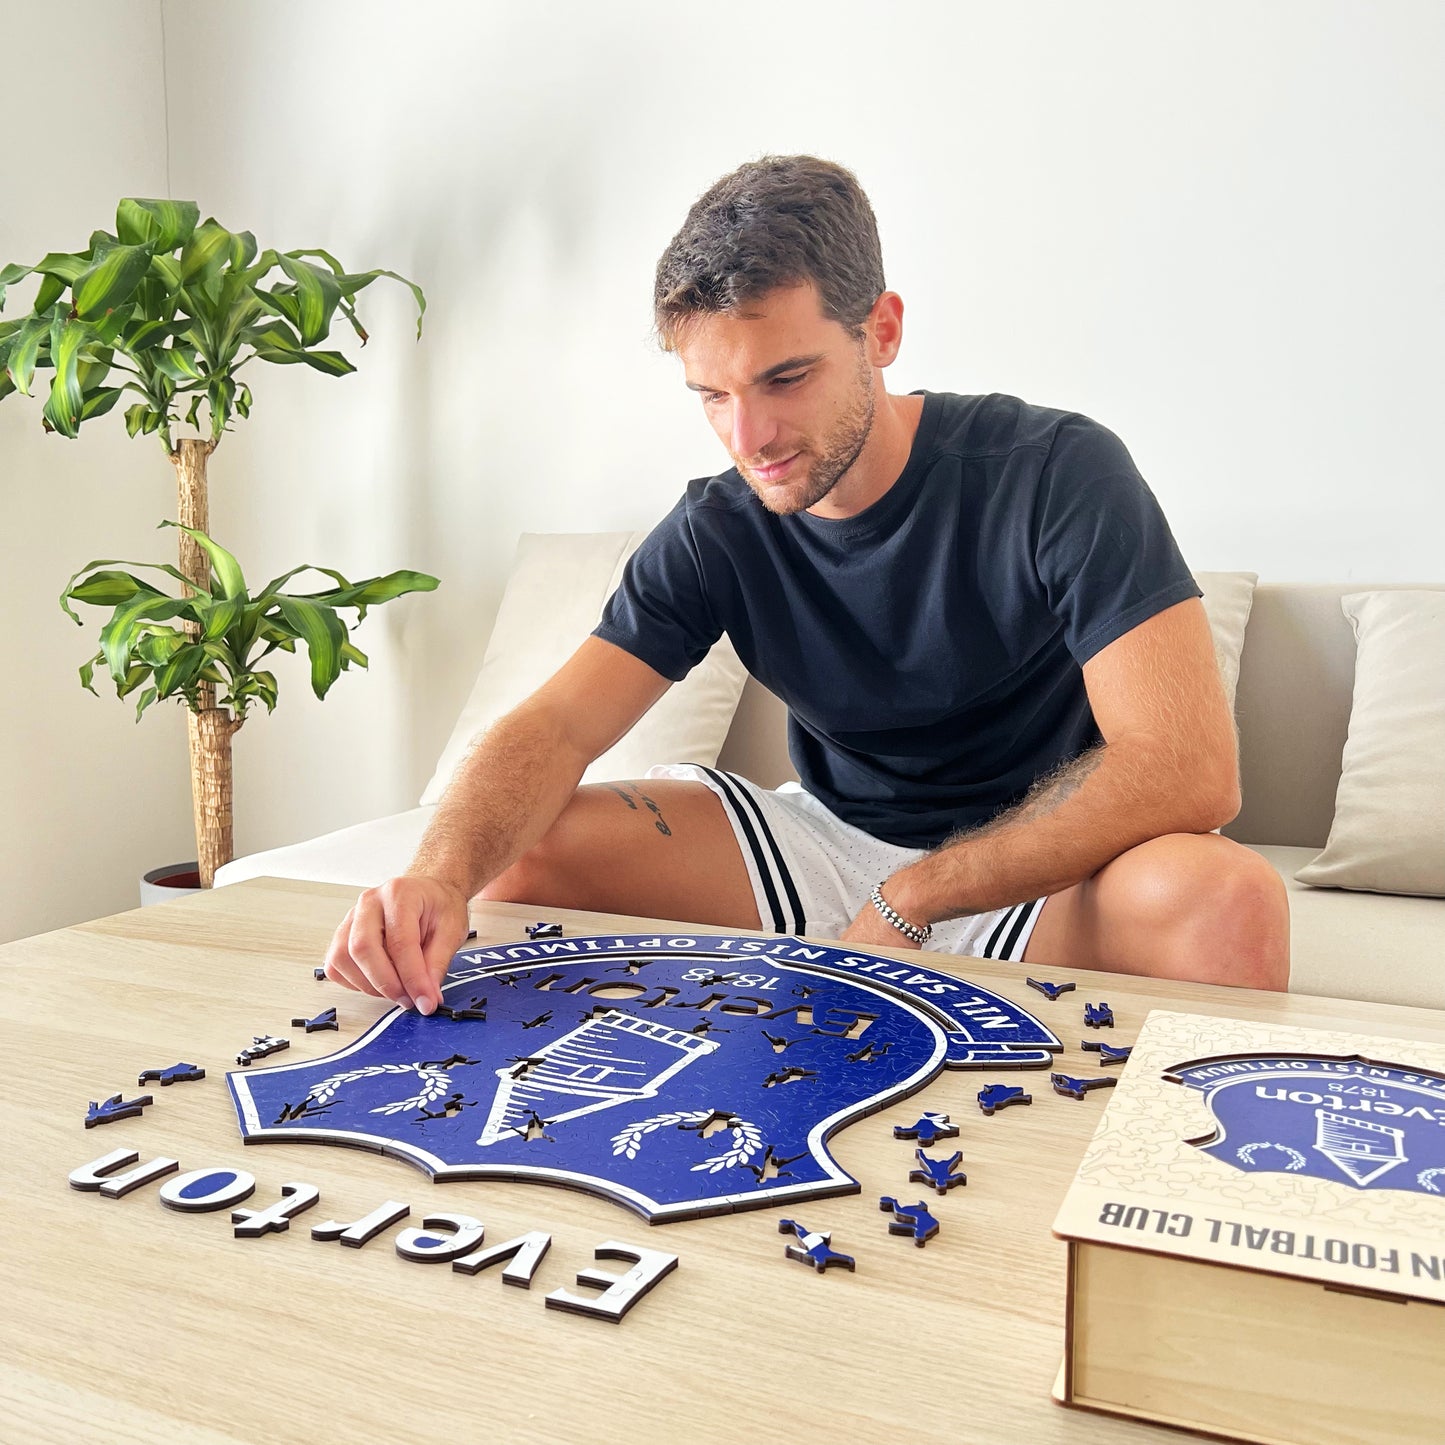 Everton FC® Crest - Wooden Puzzle